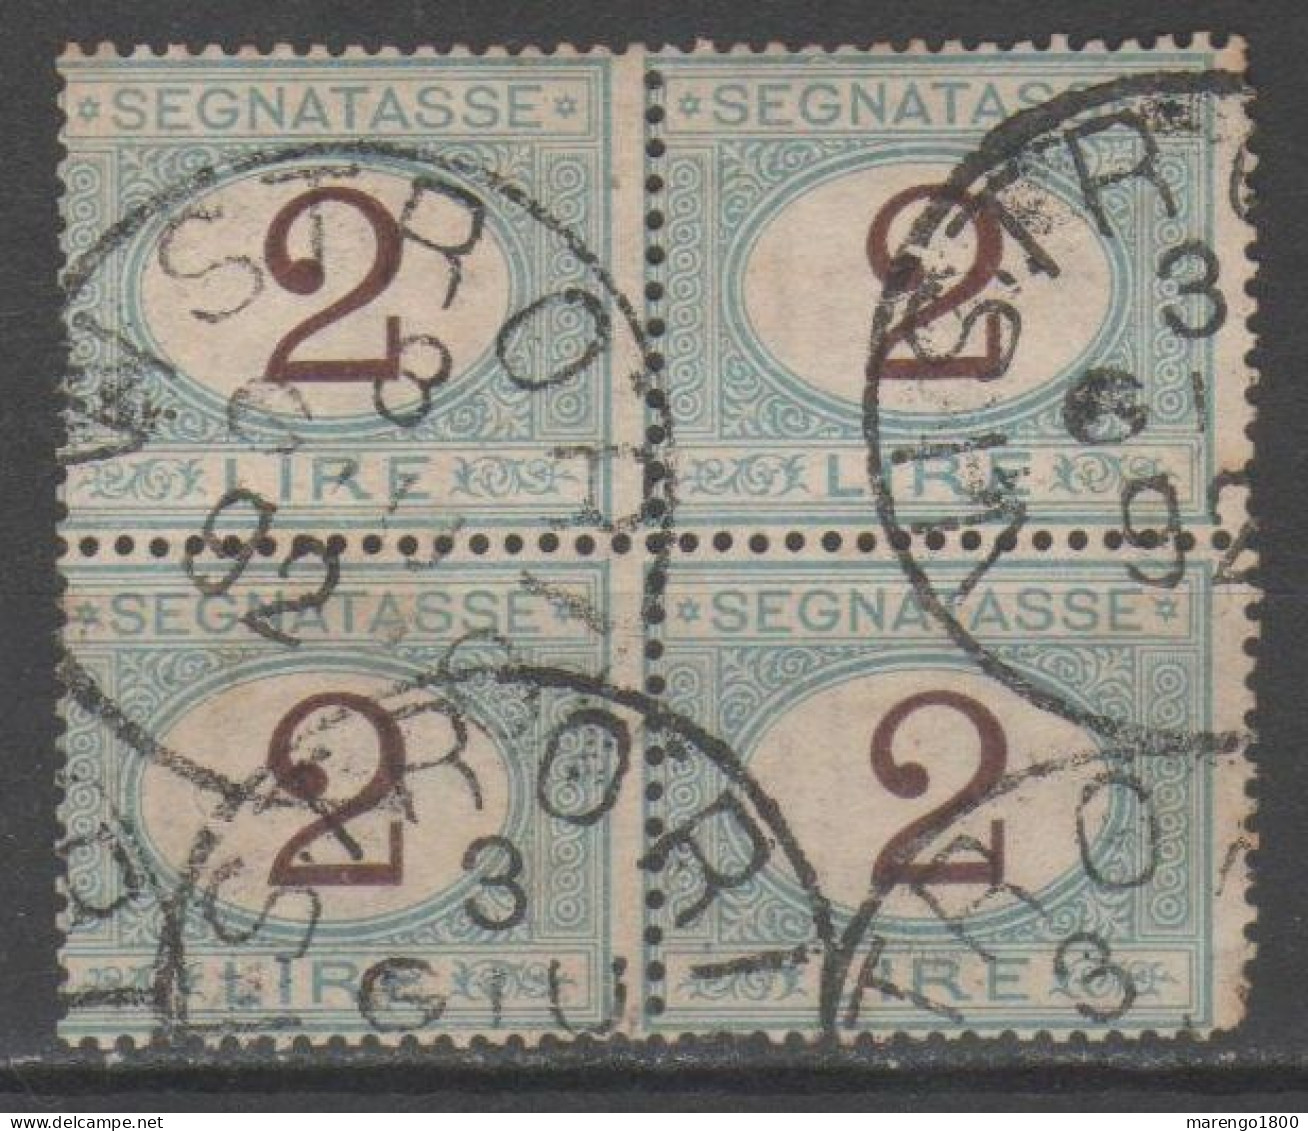 ITALIA 1870 - Segnatasse 2 L. Quartina          (g9392) - Postage Due